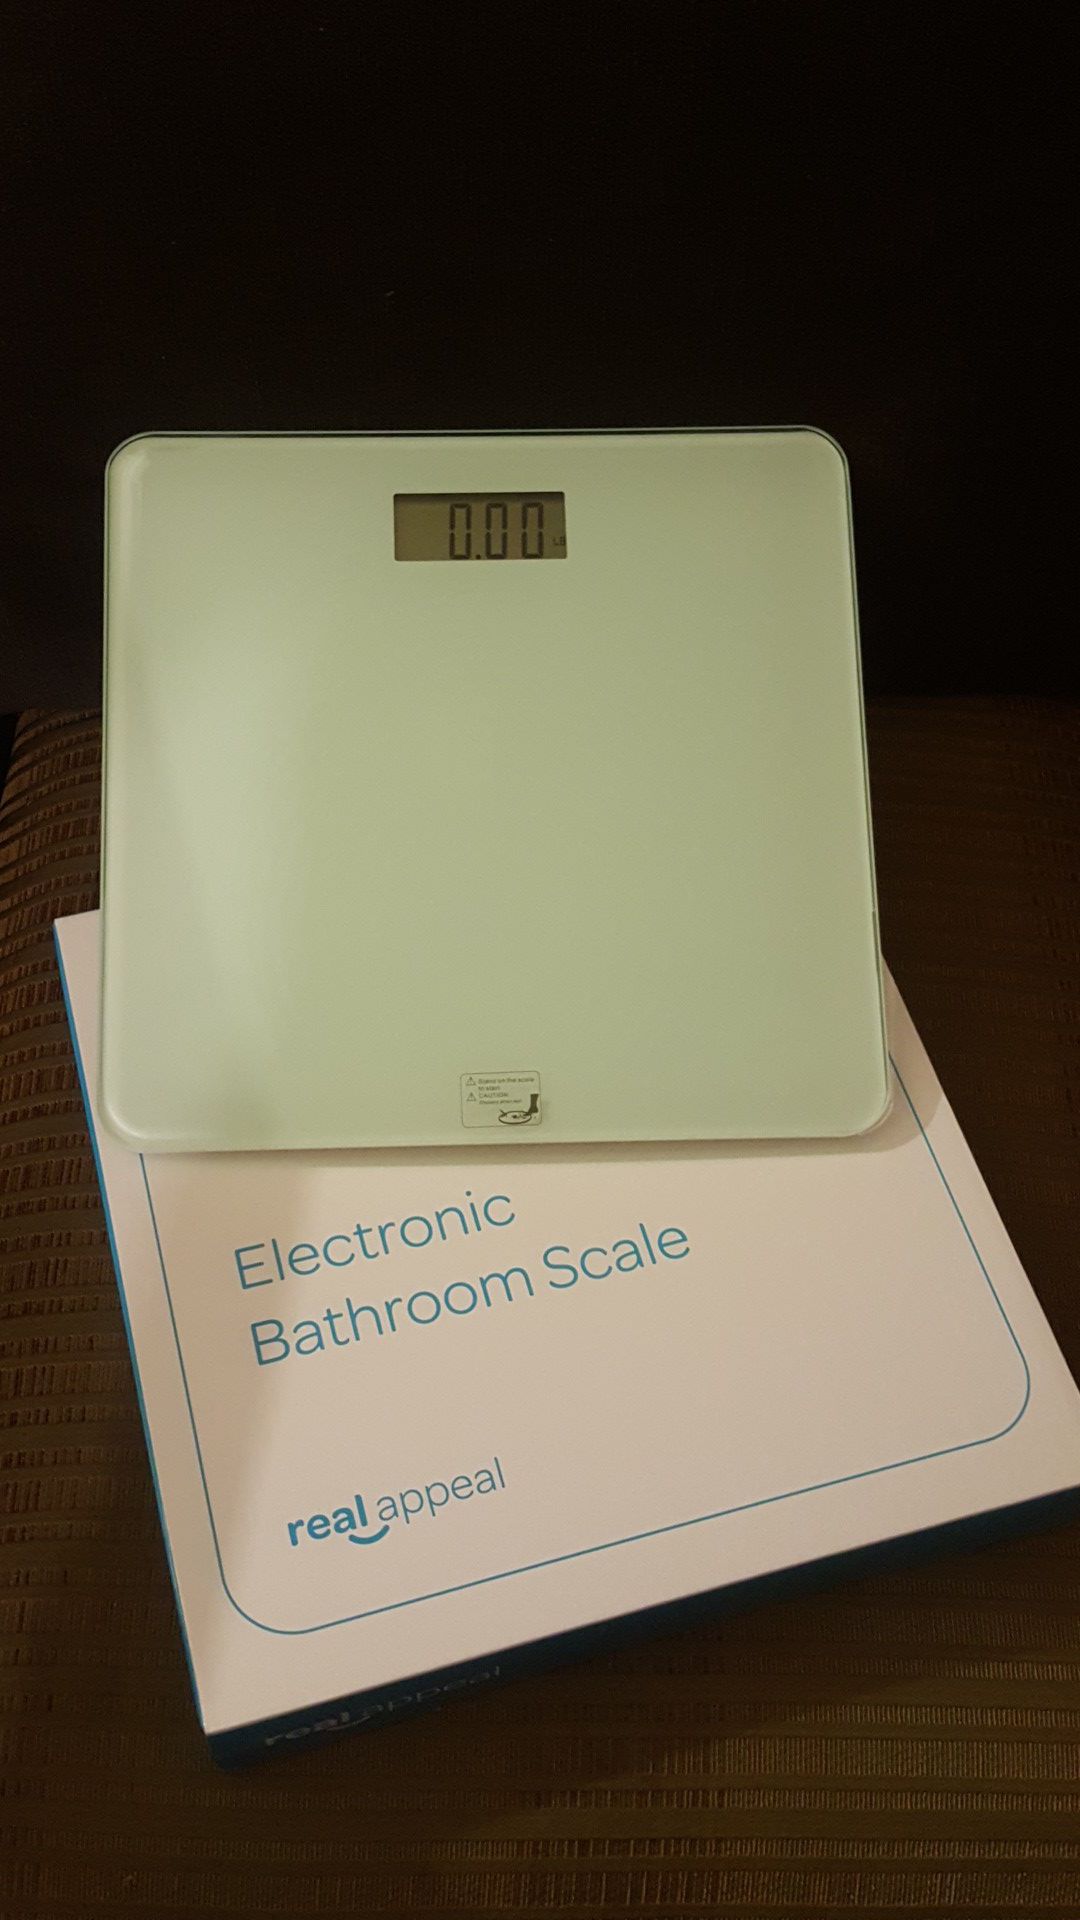 Electronic bathroom scale